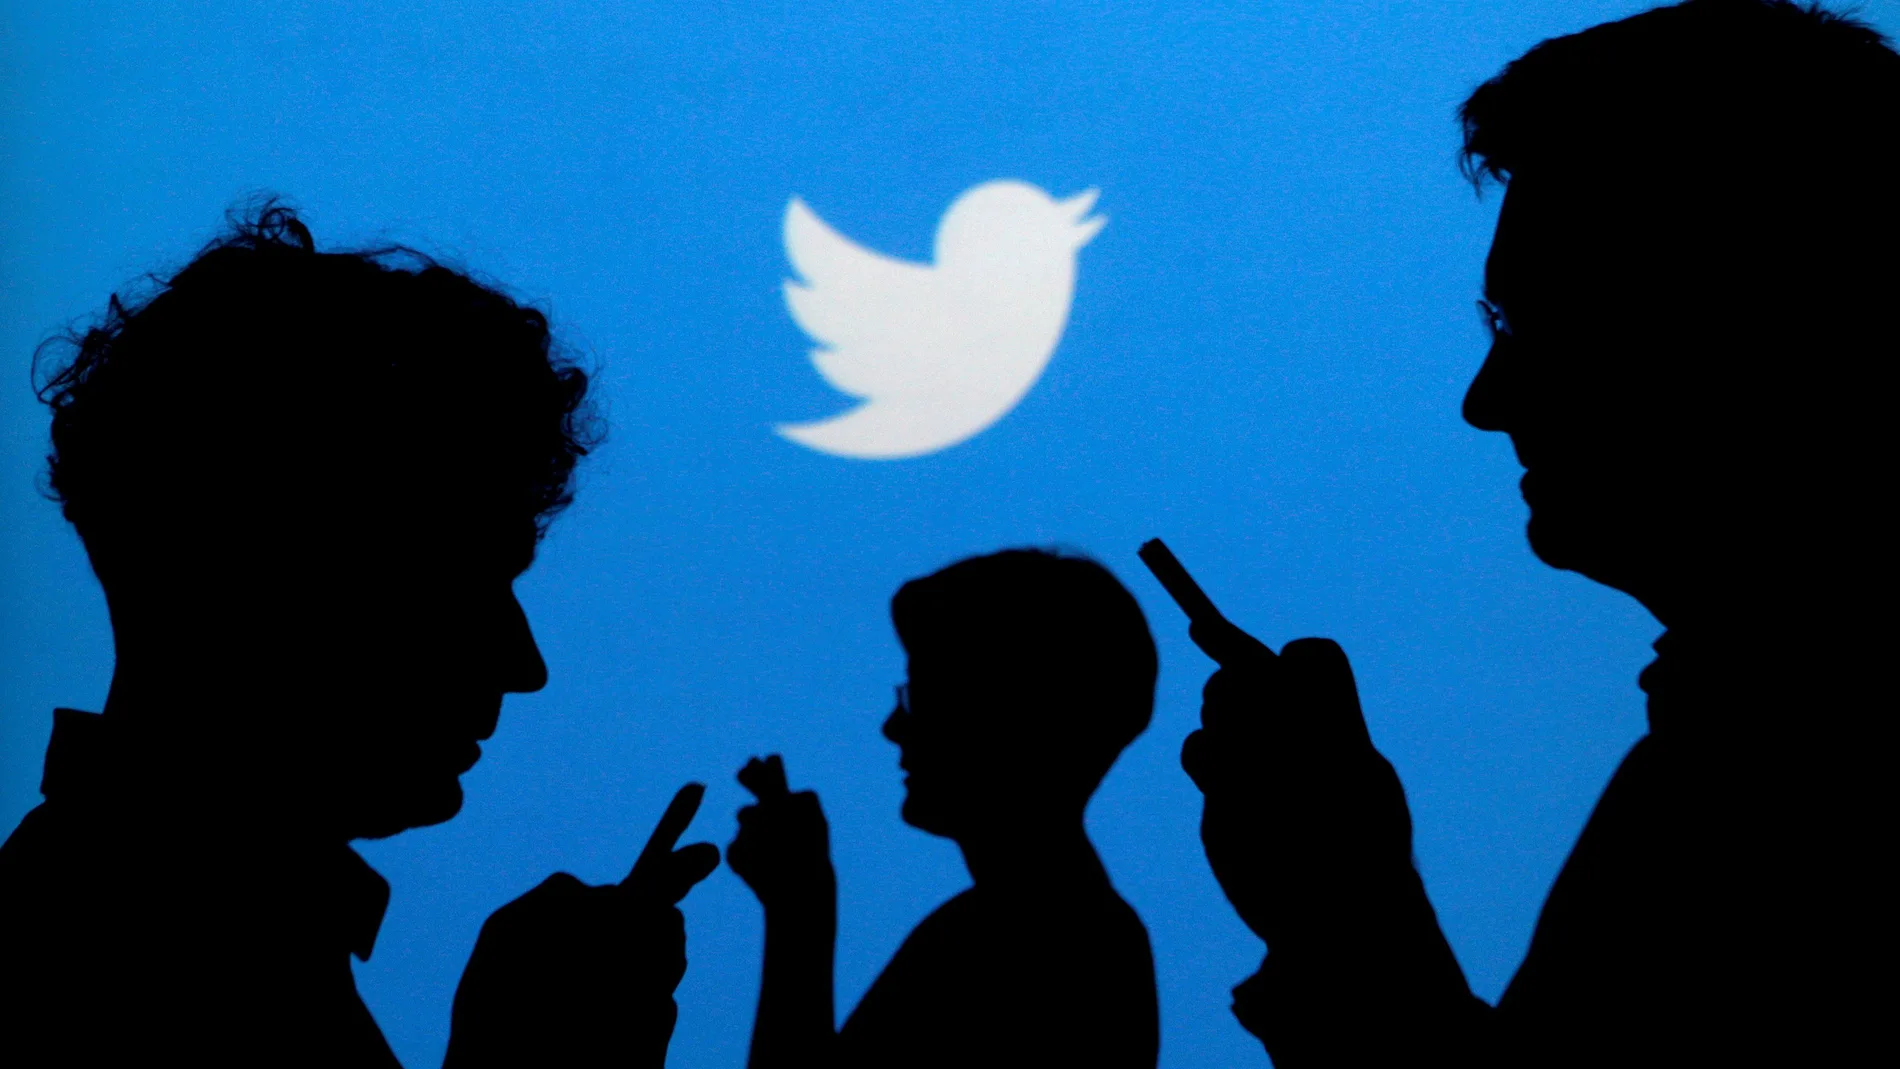 El usuario deberá entrar en su cuenta antes de una fecha concreta o esta "será retirada de Twitter", según anuncia la red social en un comunicado